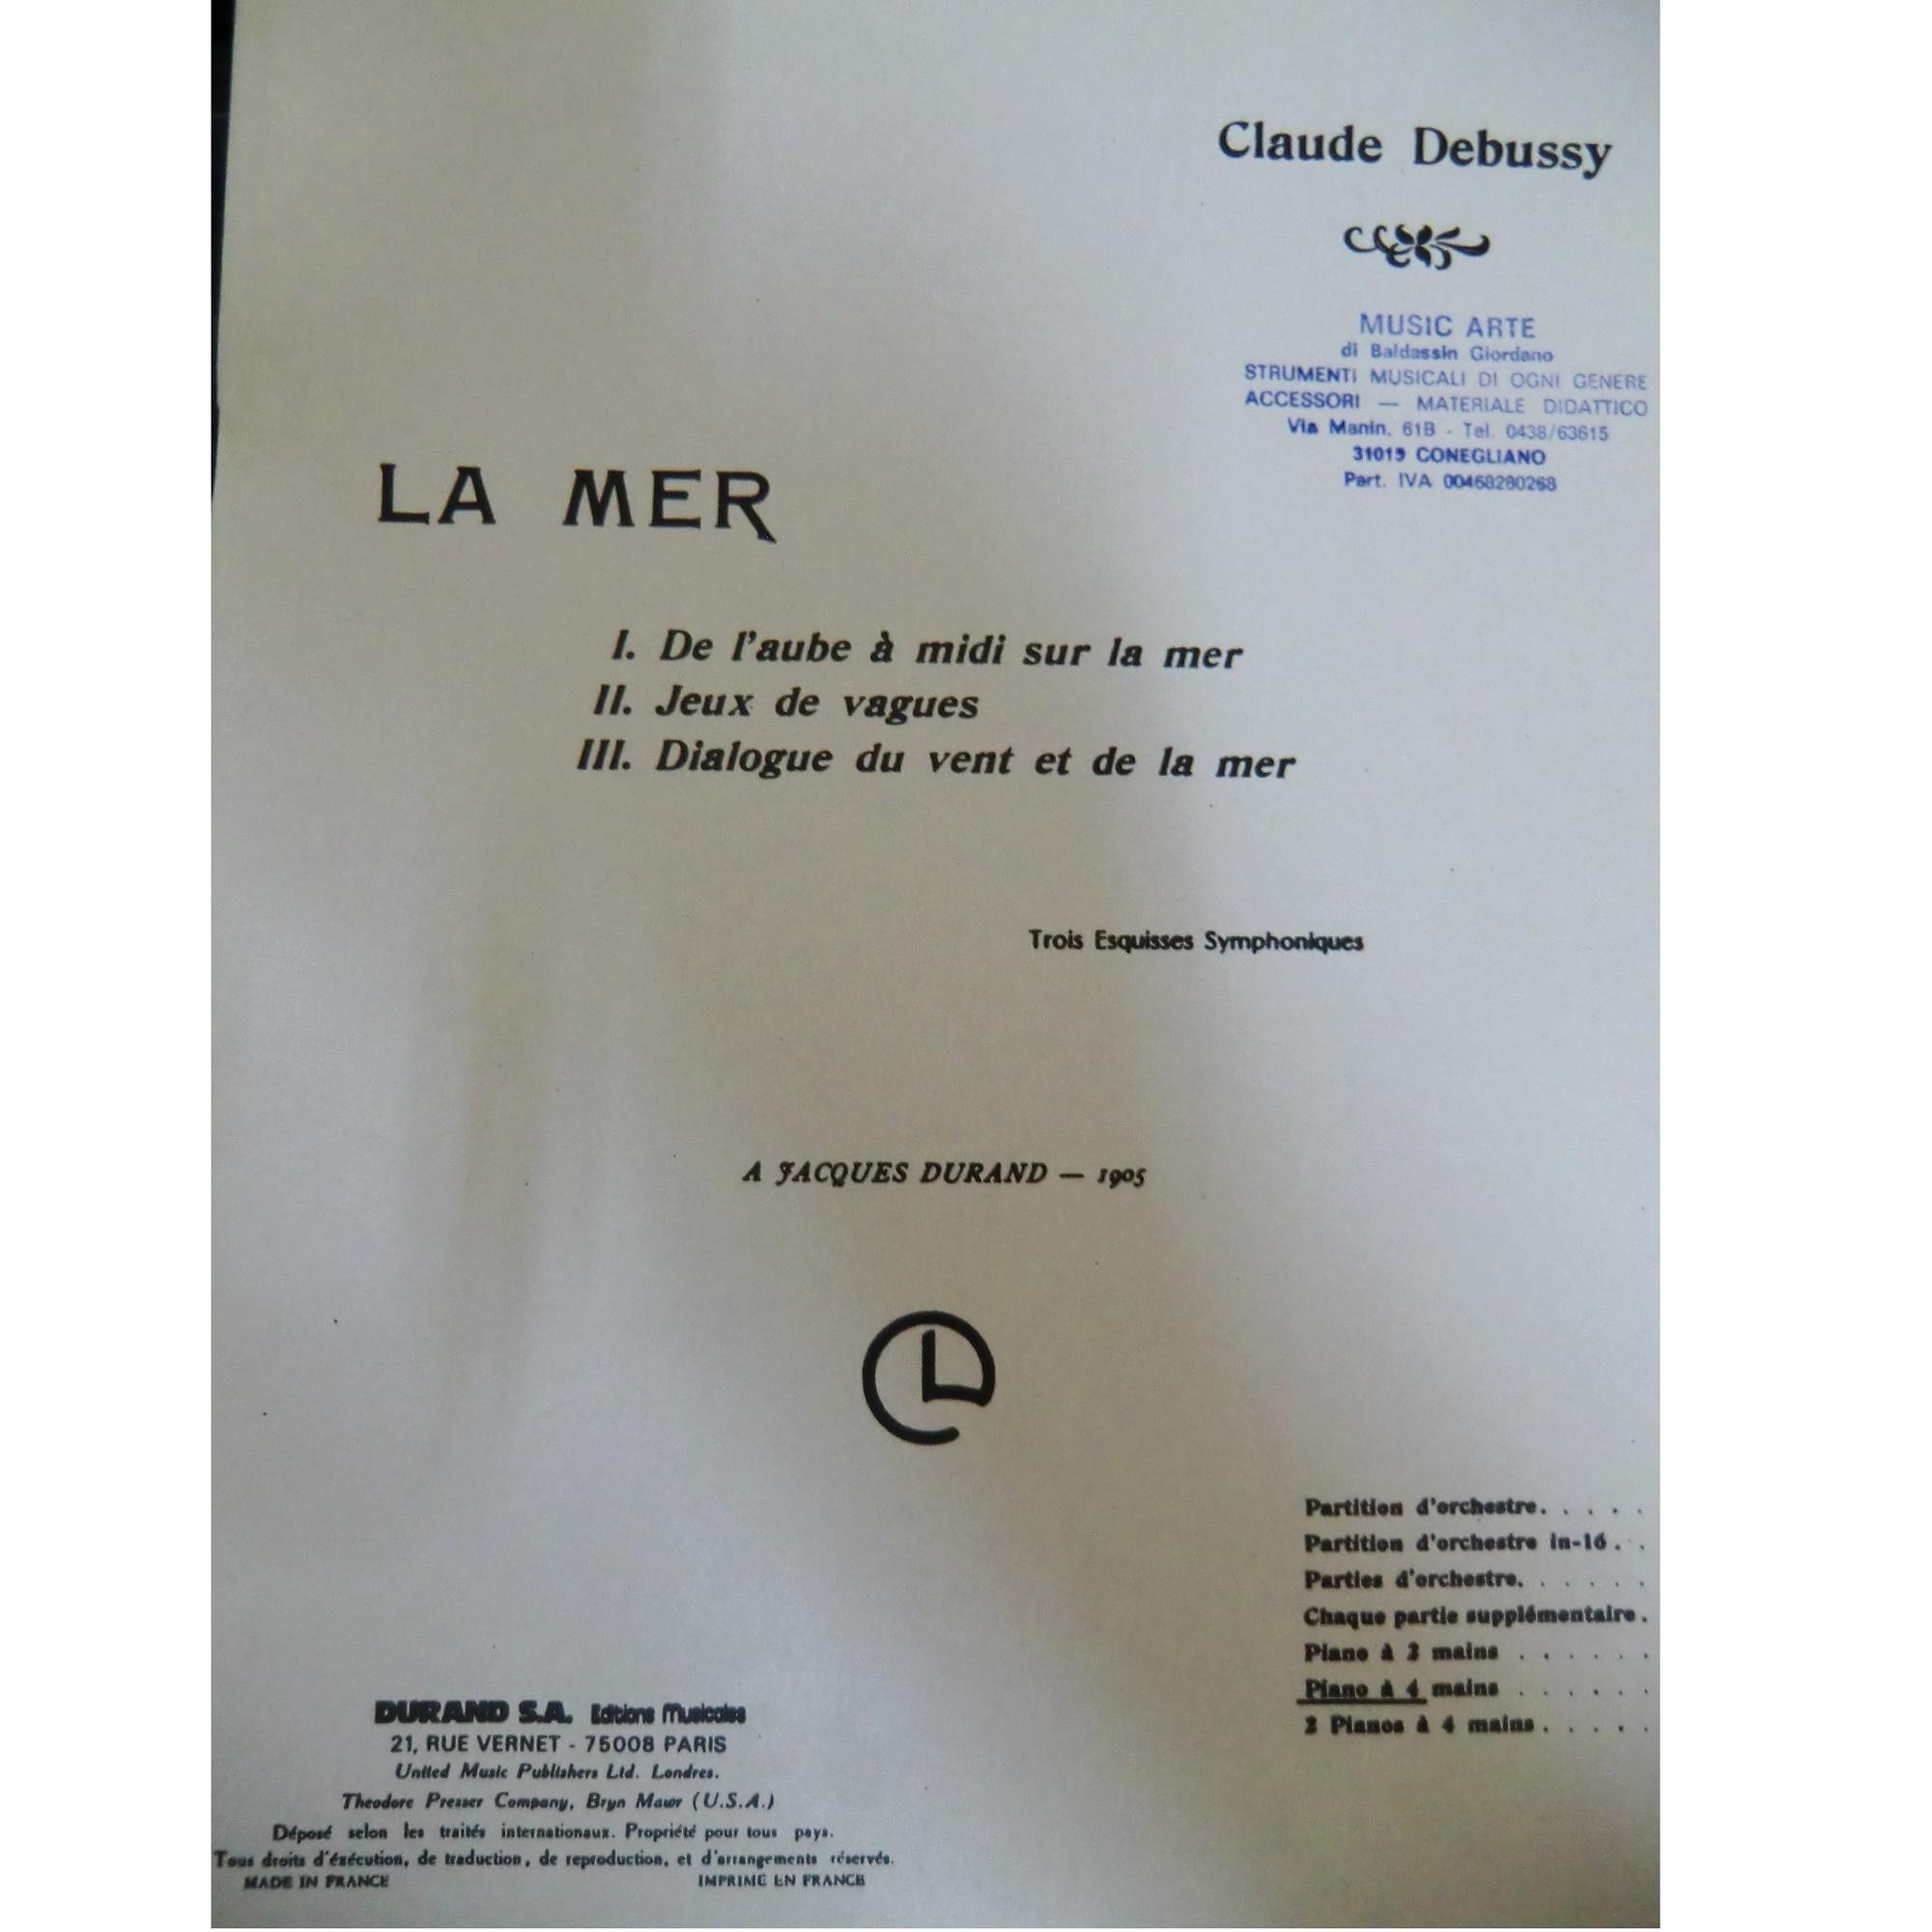 Debussy La Mer Trois Esquisses Symphoniques - Durand S.A